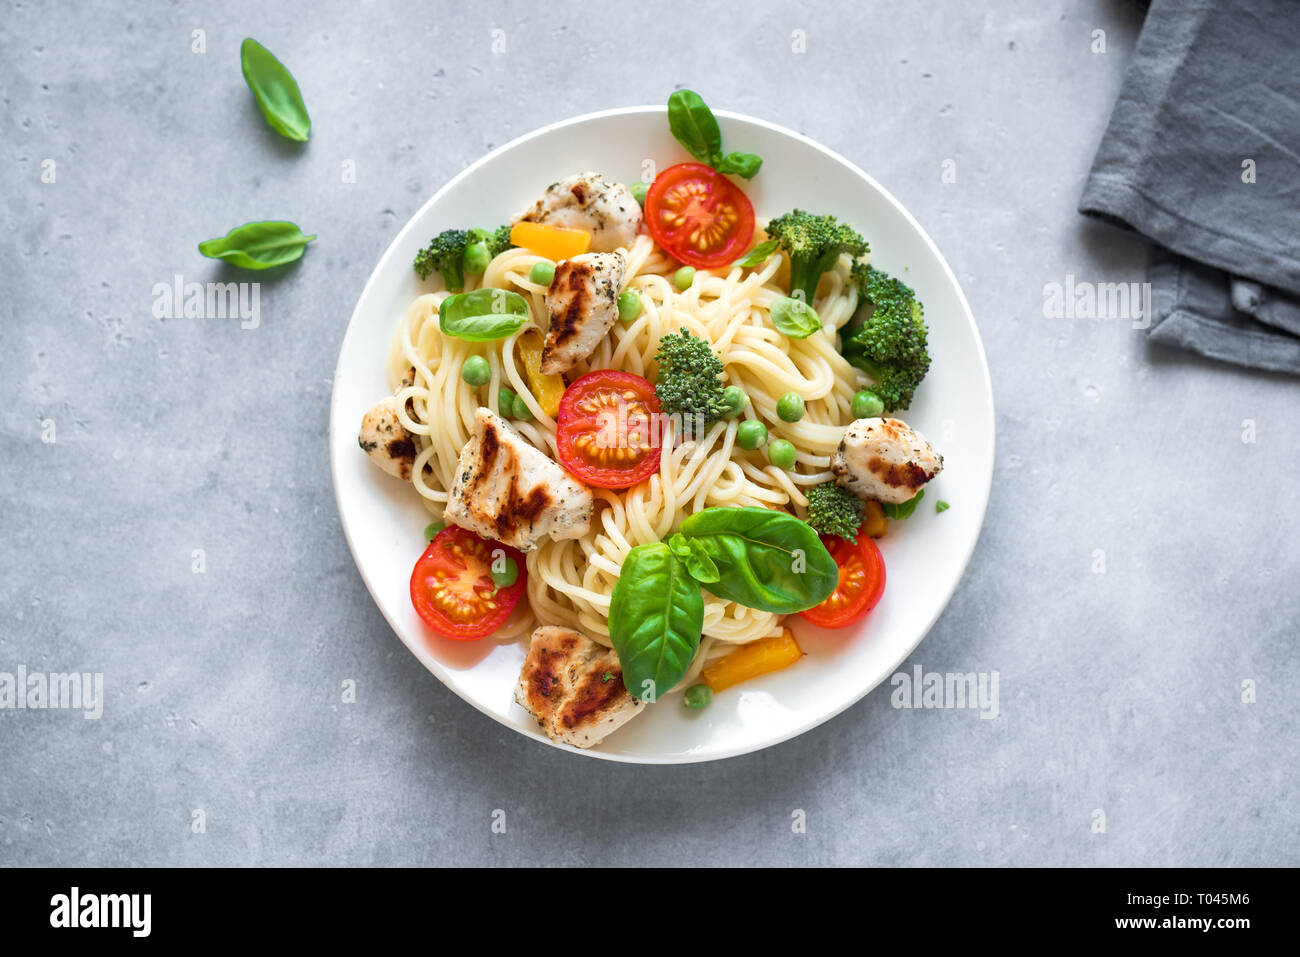 Recette de spaghetti avec sauce aux légumes grillés